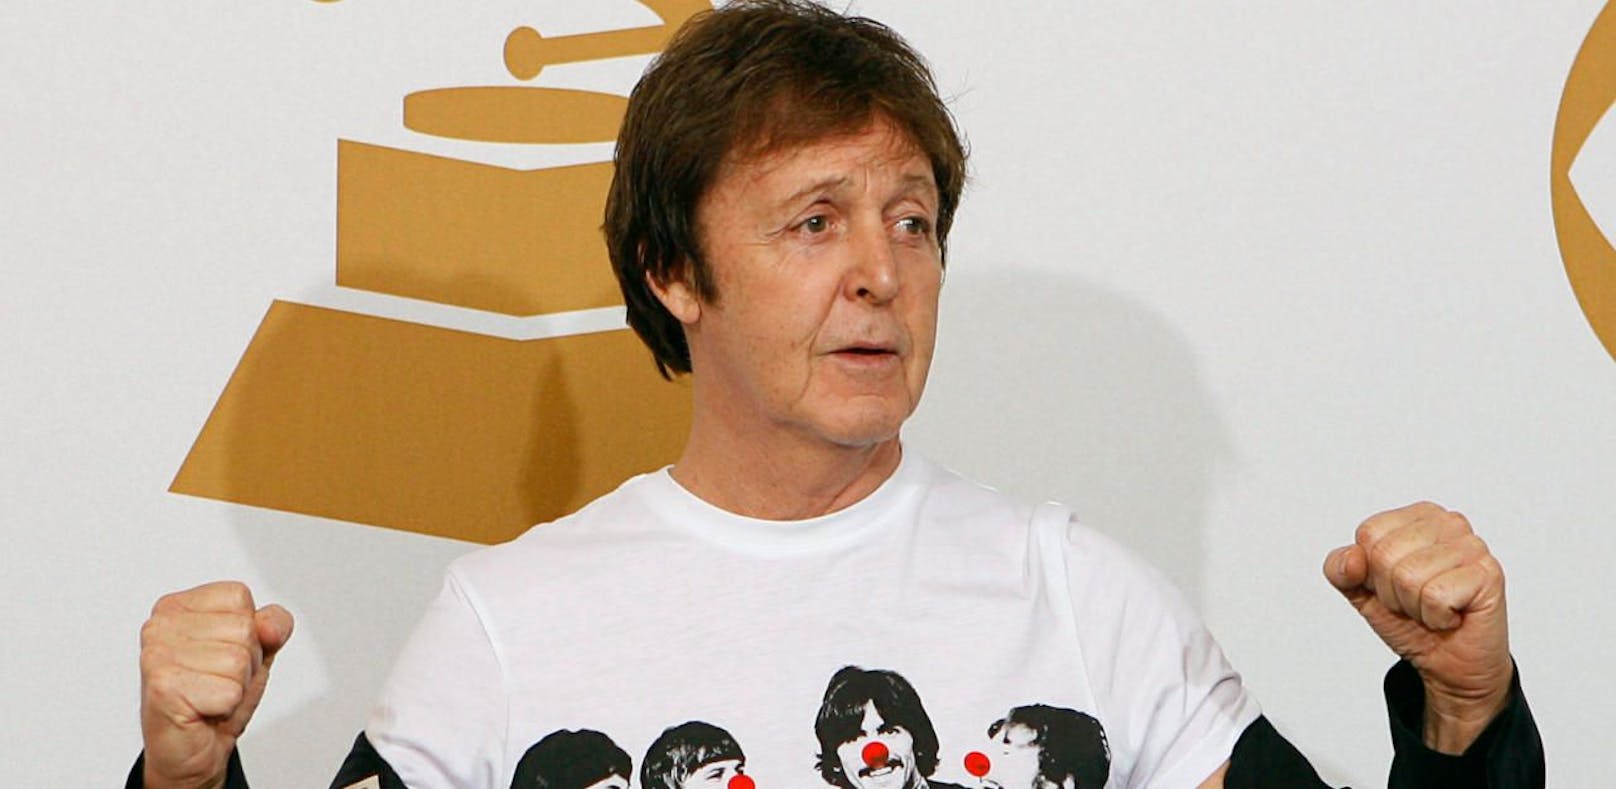 Sir Paul McCartney lässt zwei neue Songs hören